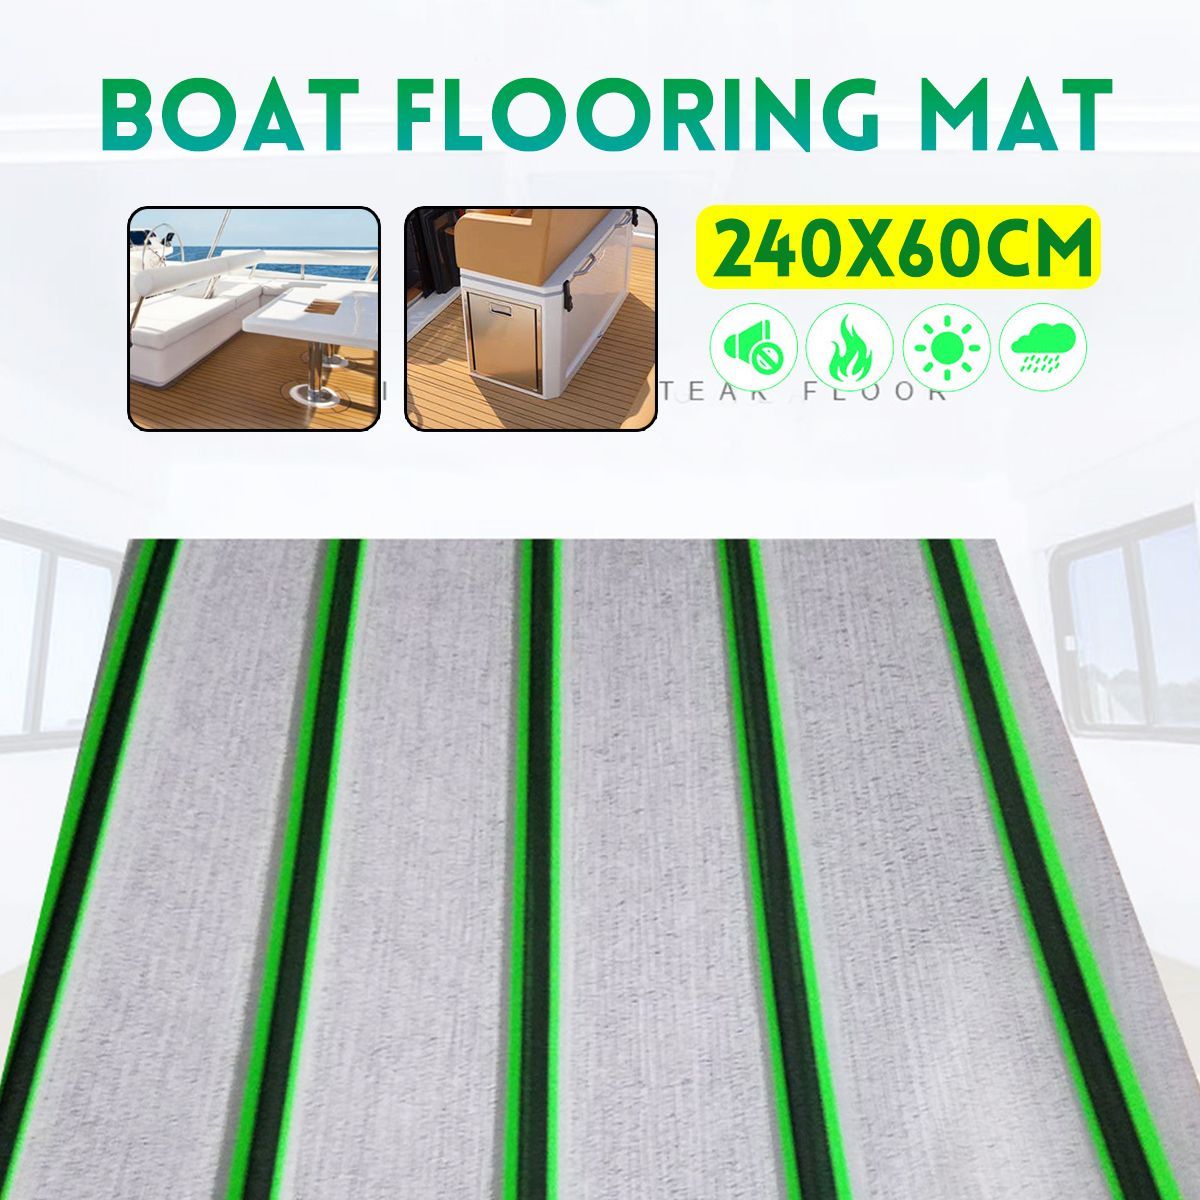 24060-CM-Boat-Floor-Mat-EVA-Boat-Sheet-Marine-Flooring-Carpet-1634324